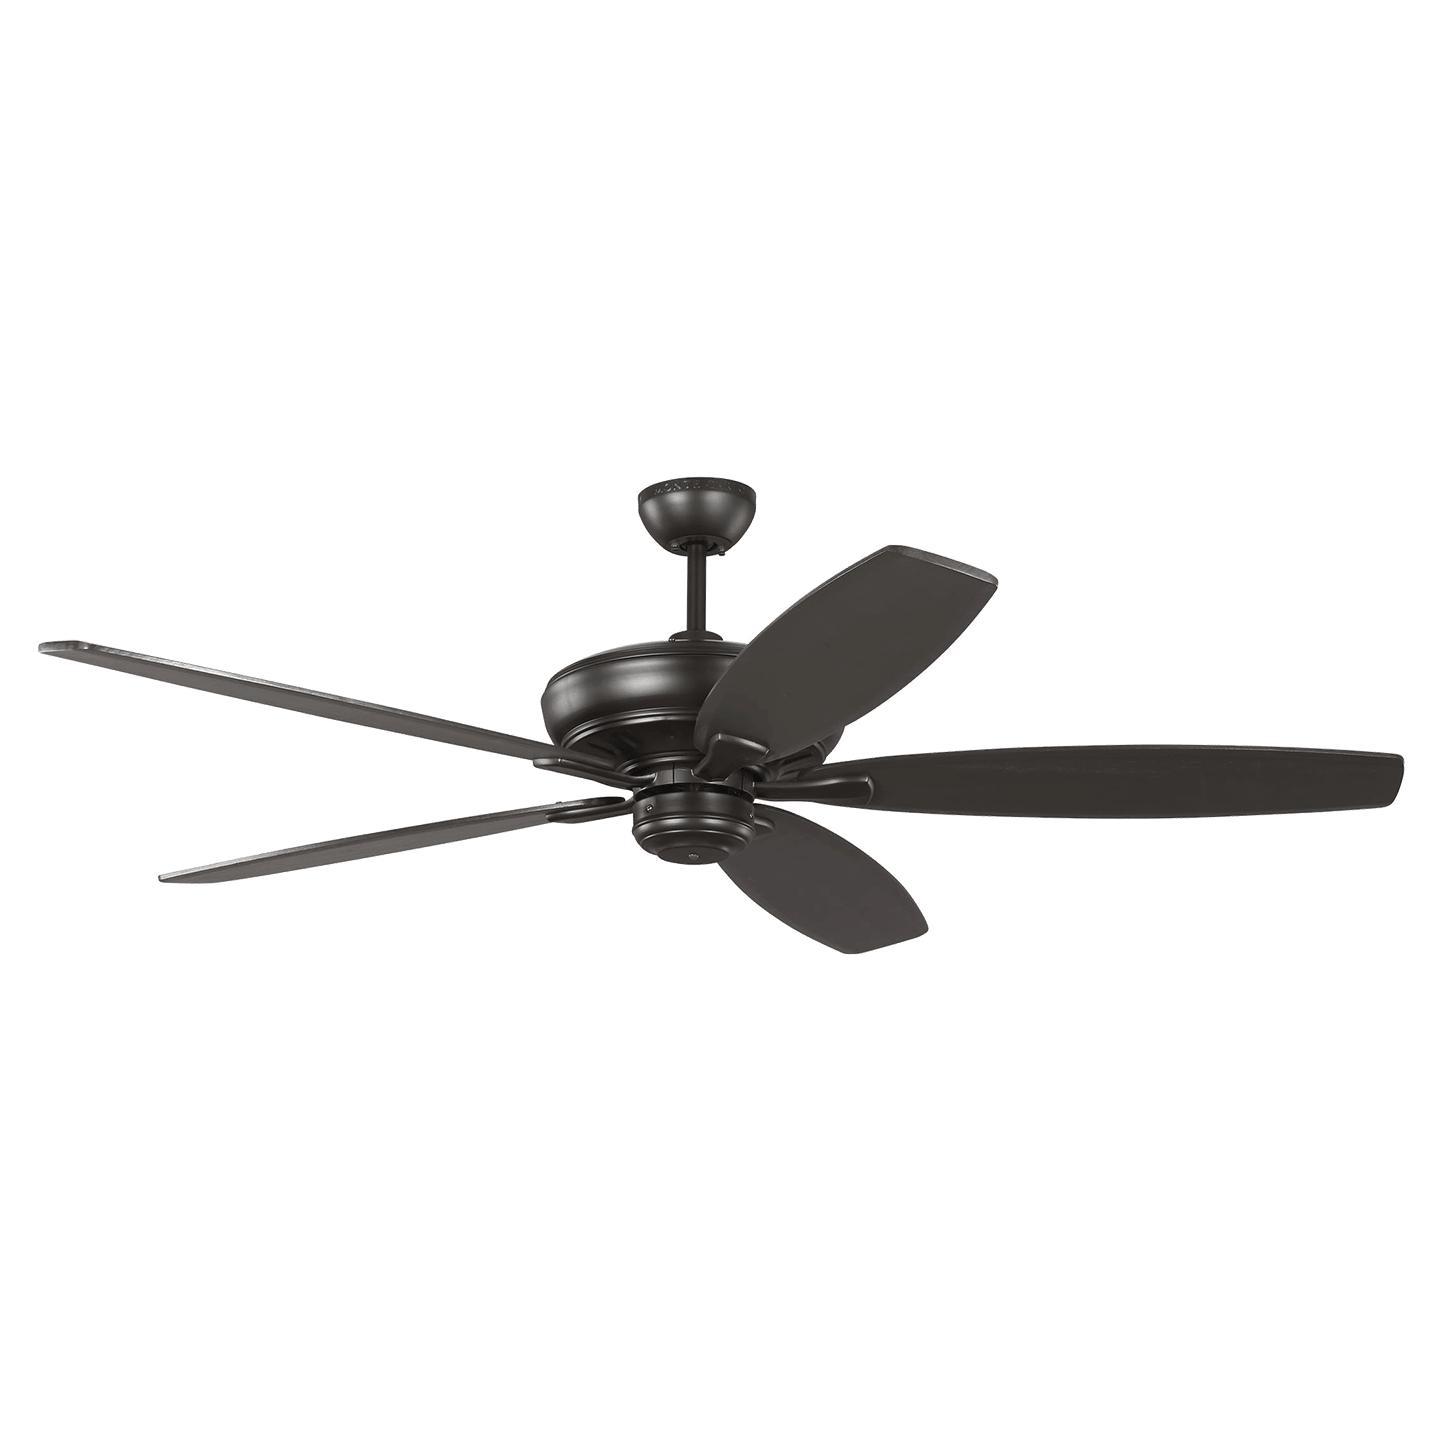 Купить Потолочный вентилятор Dover 60" Ceiling Fan в интернет-магазине roooms.ru